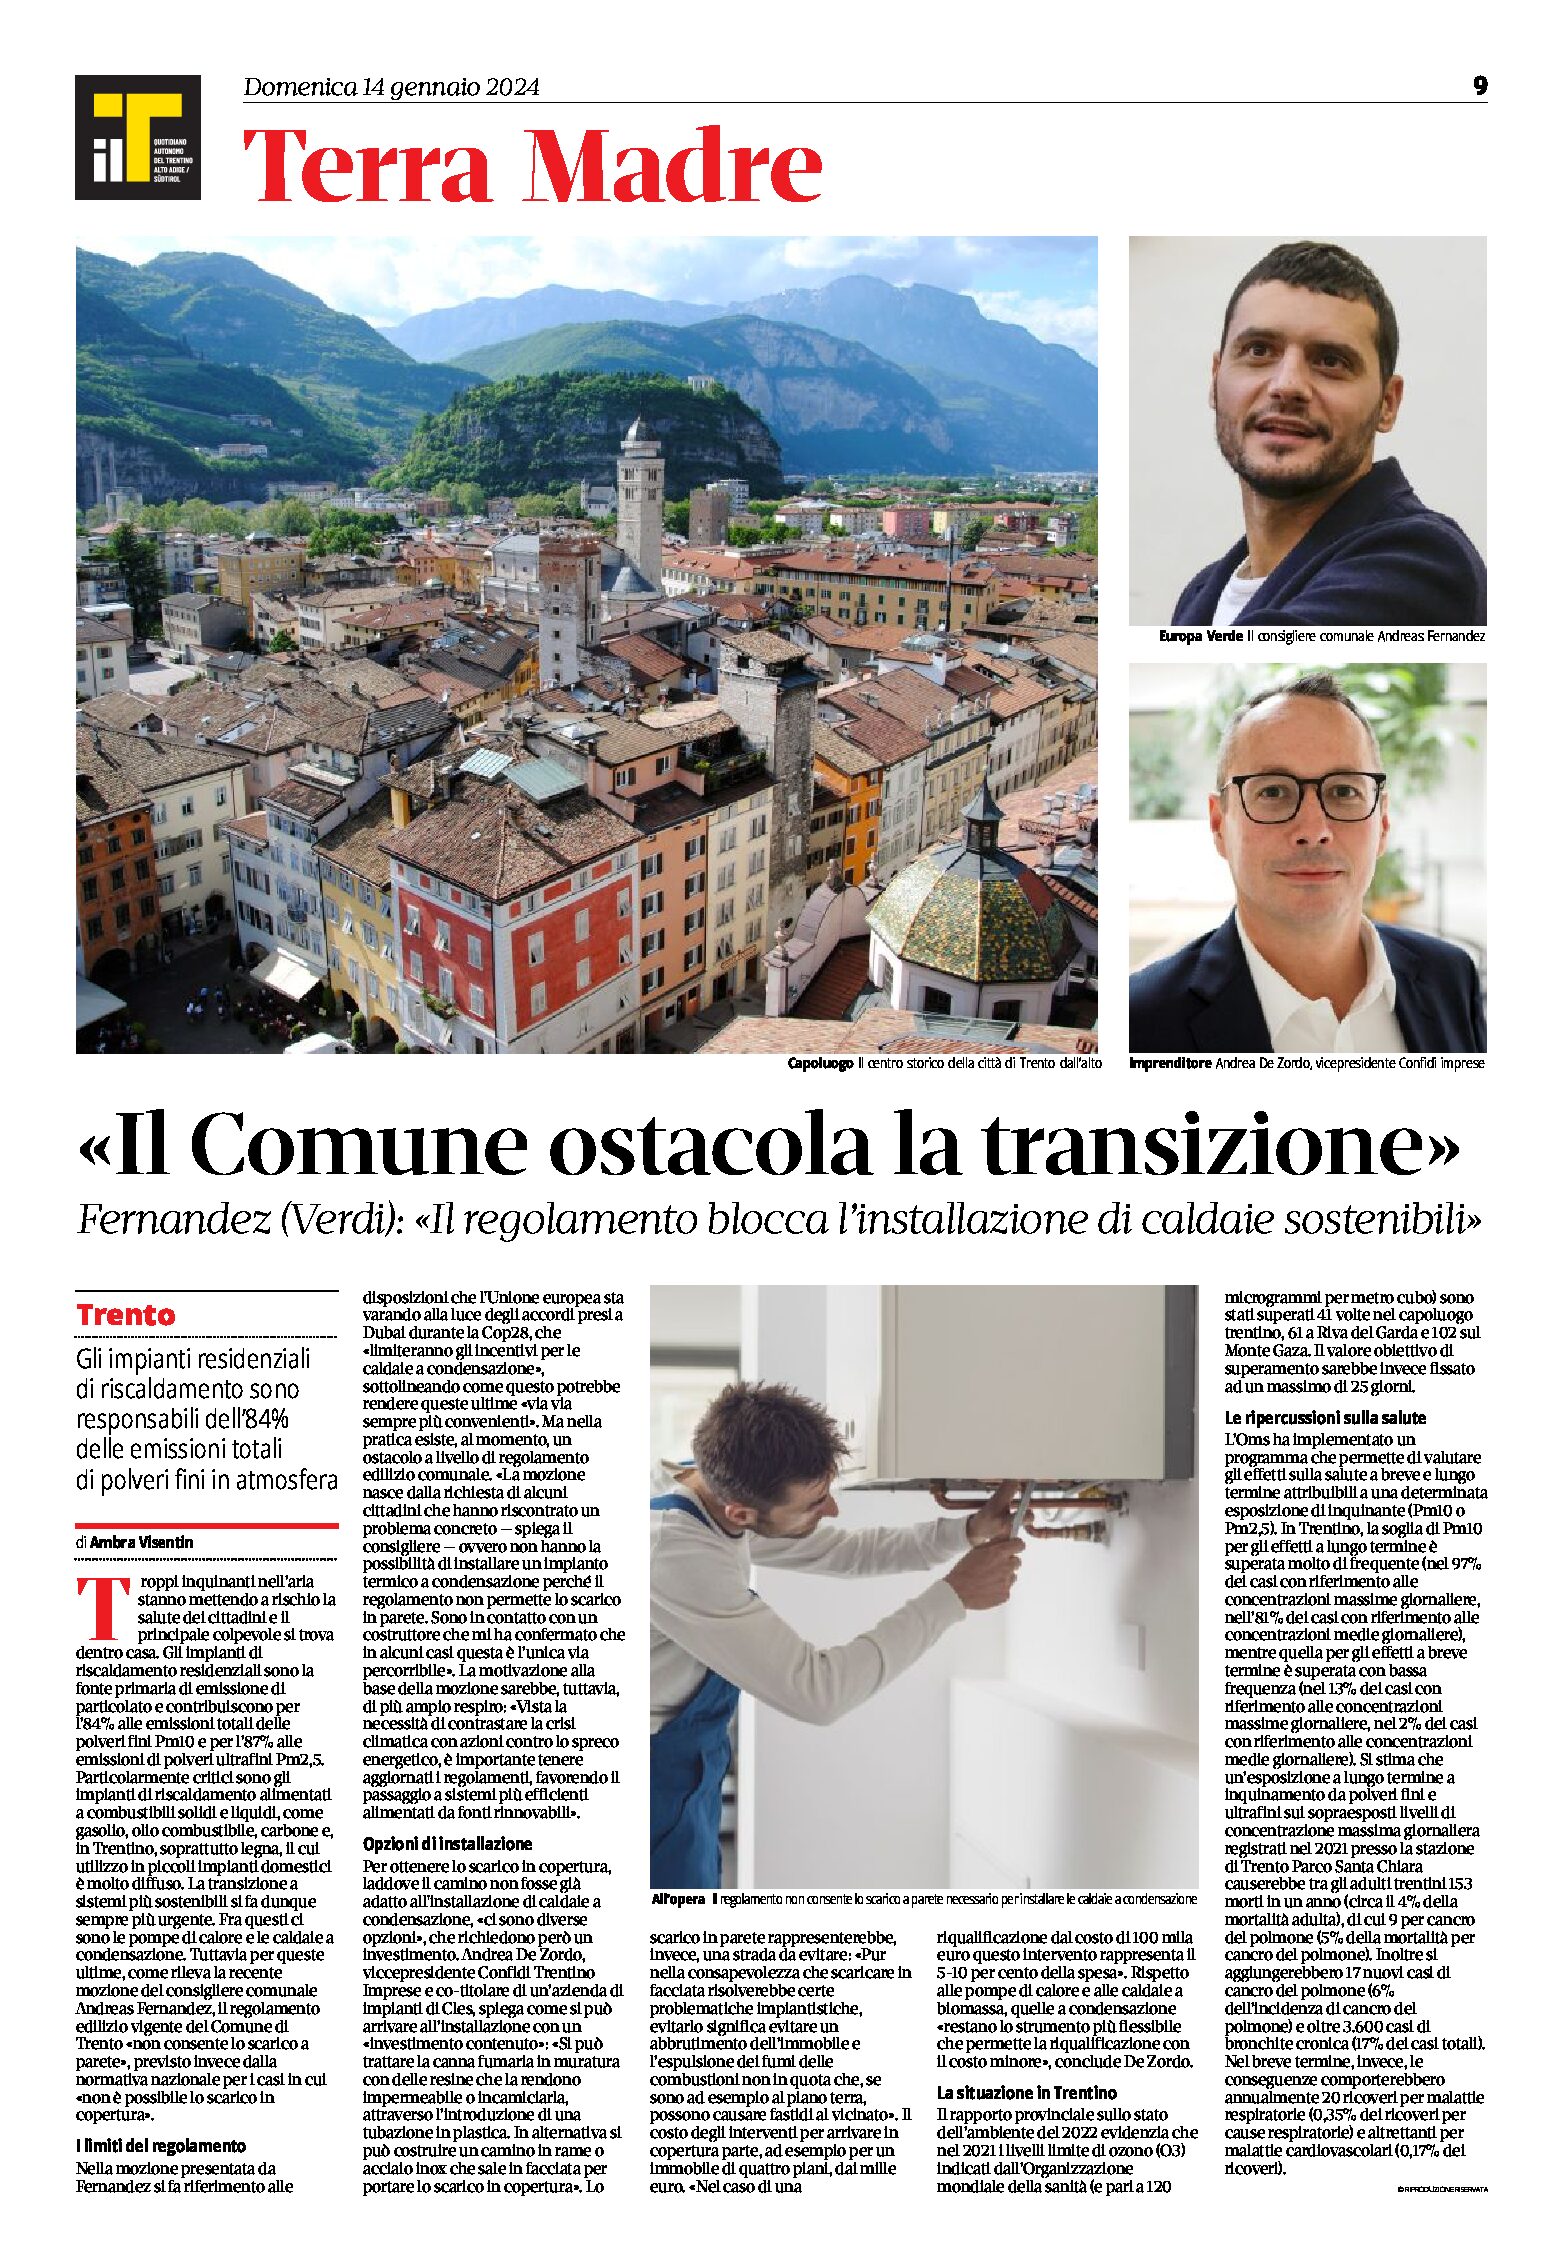 Trento: Fernandez “il Comune ostacola la transizione all’installazione di caldaie sostenibili”